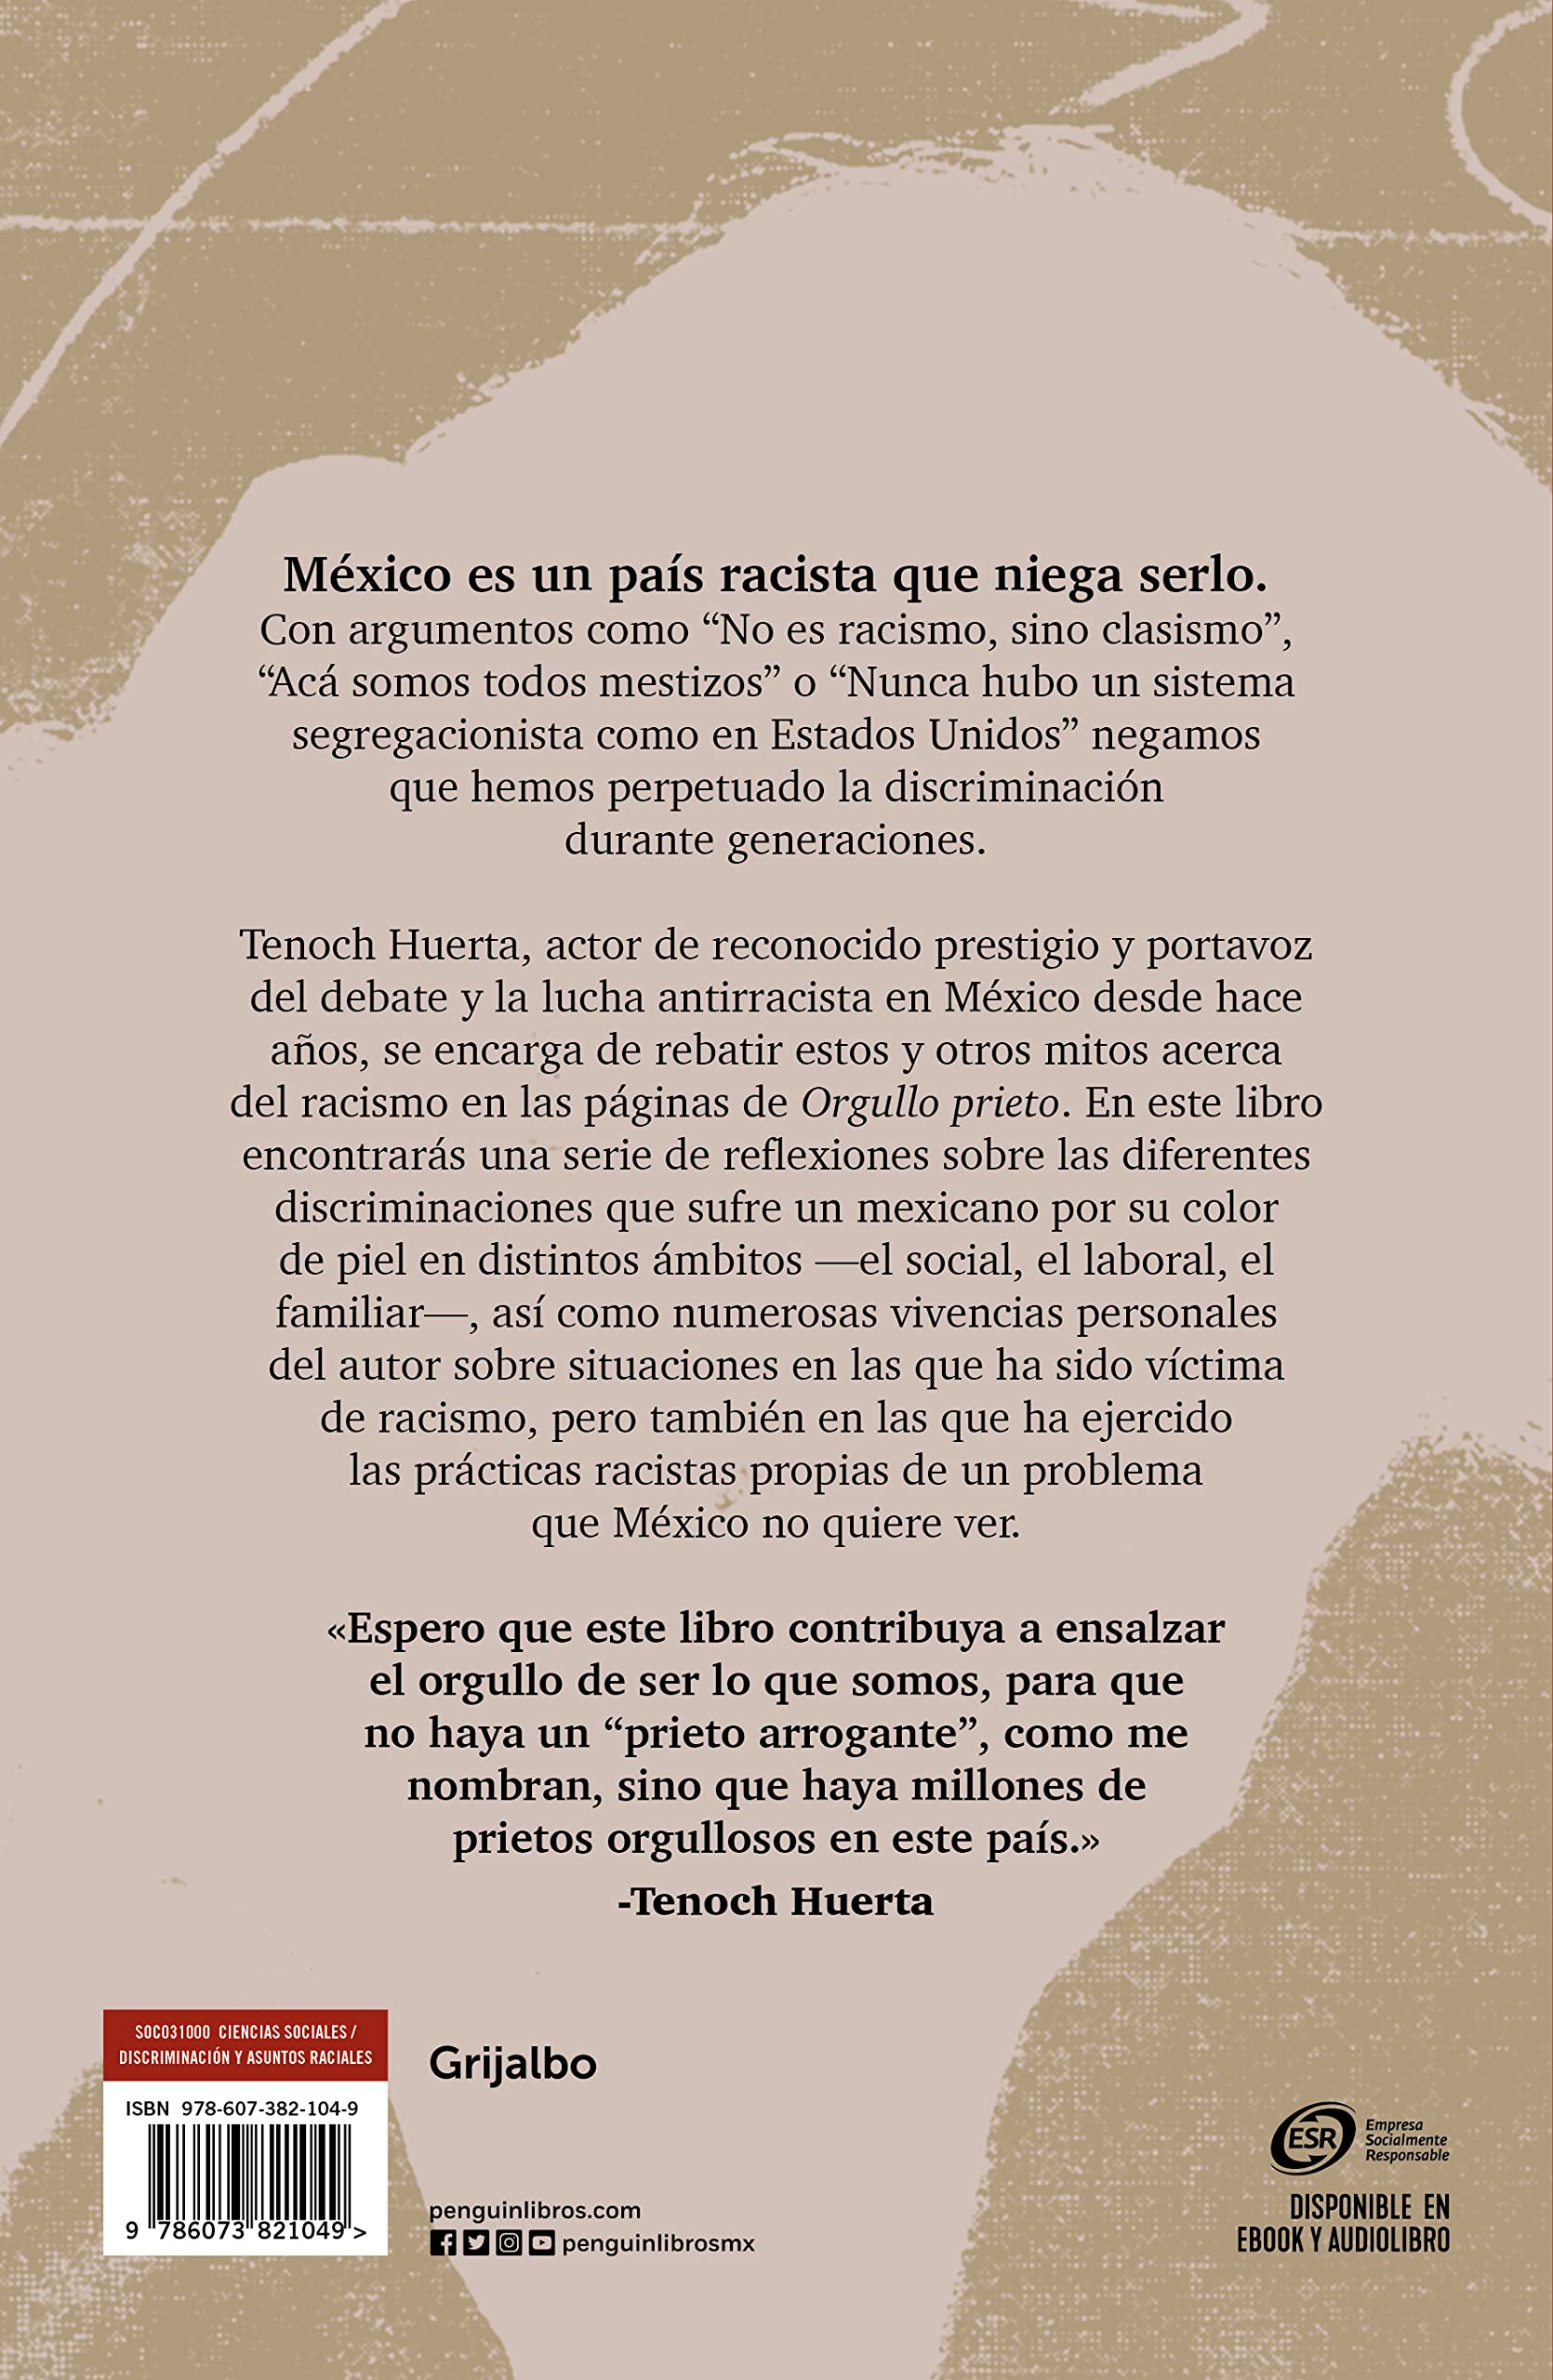 Orgullo prieto / Brown Pride (Spanish Edition) (PB)